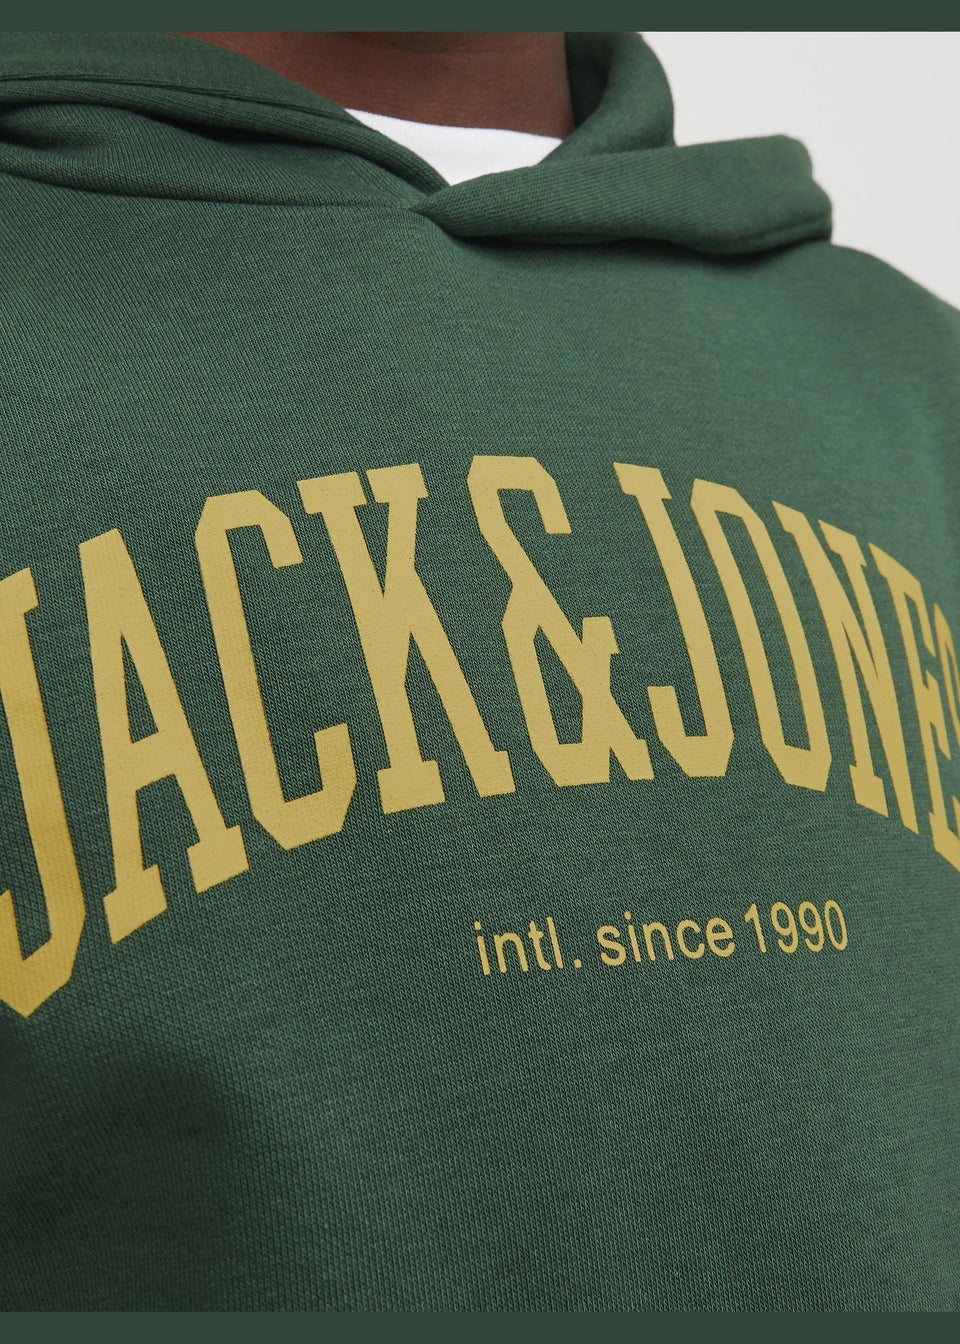 Jack & Jones Boys Green Hoodie (8-16yrs)